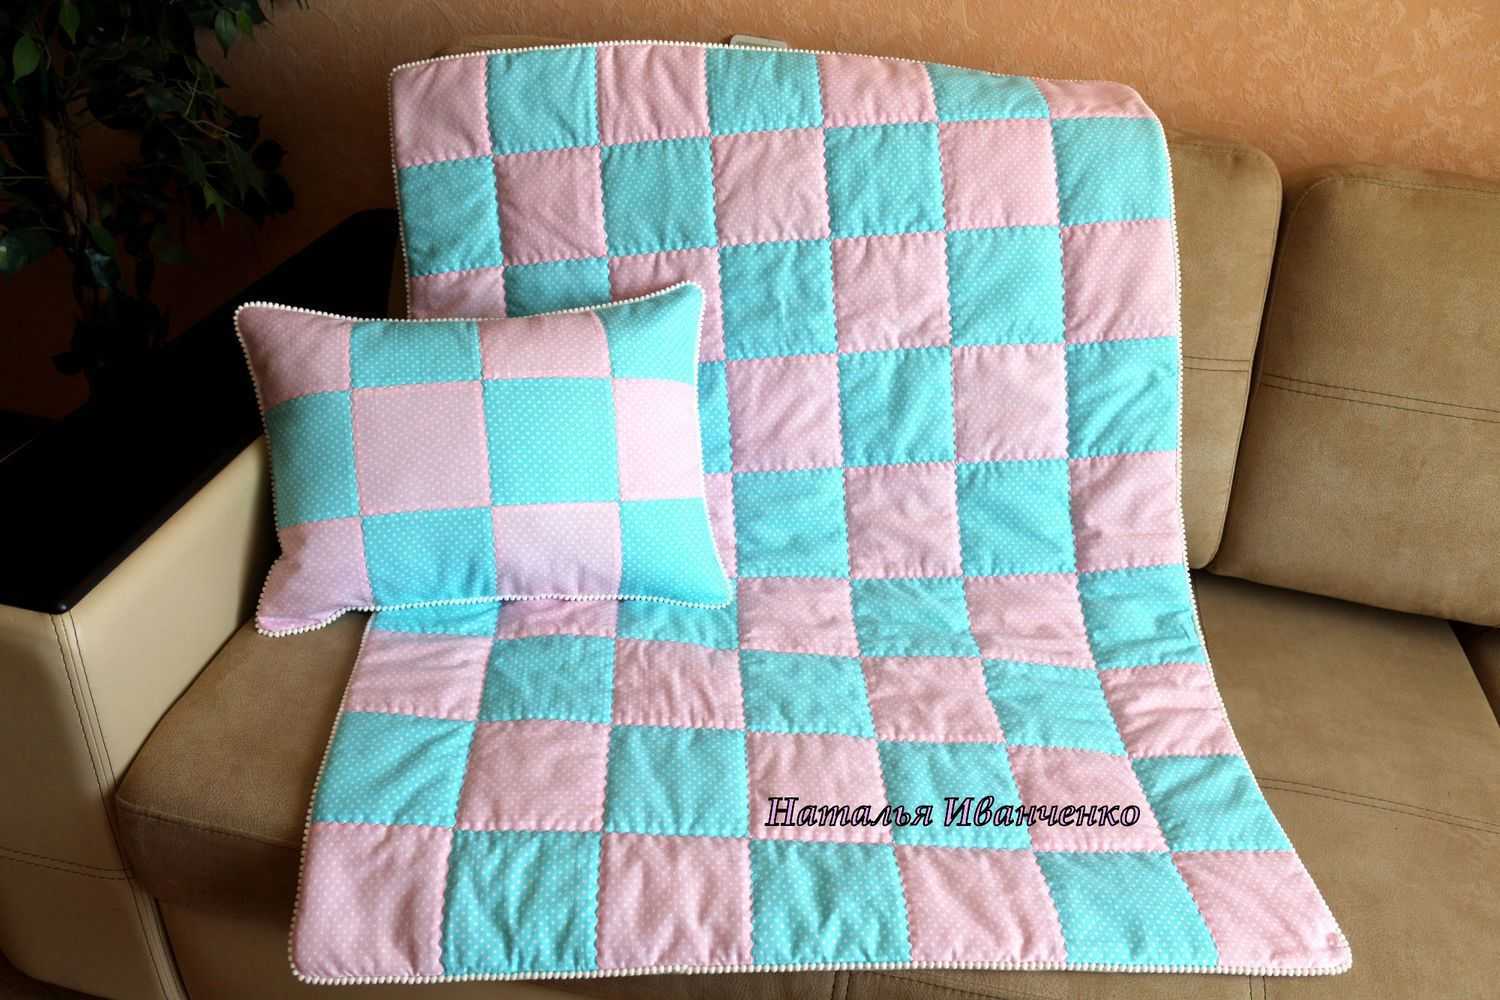 Теплое и красивое одеяло спицами для новорожденных